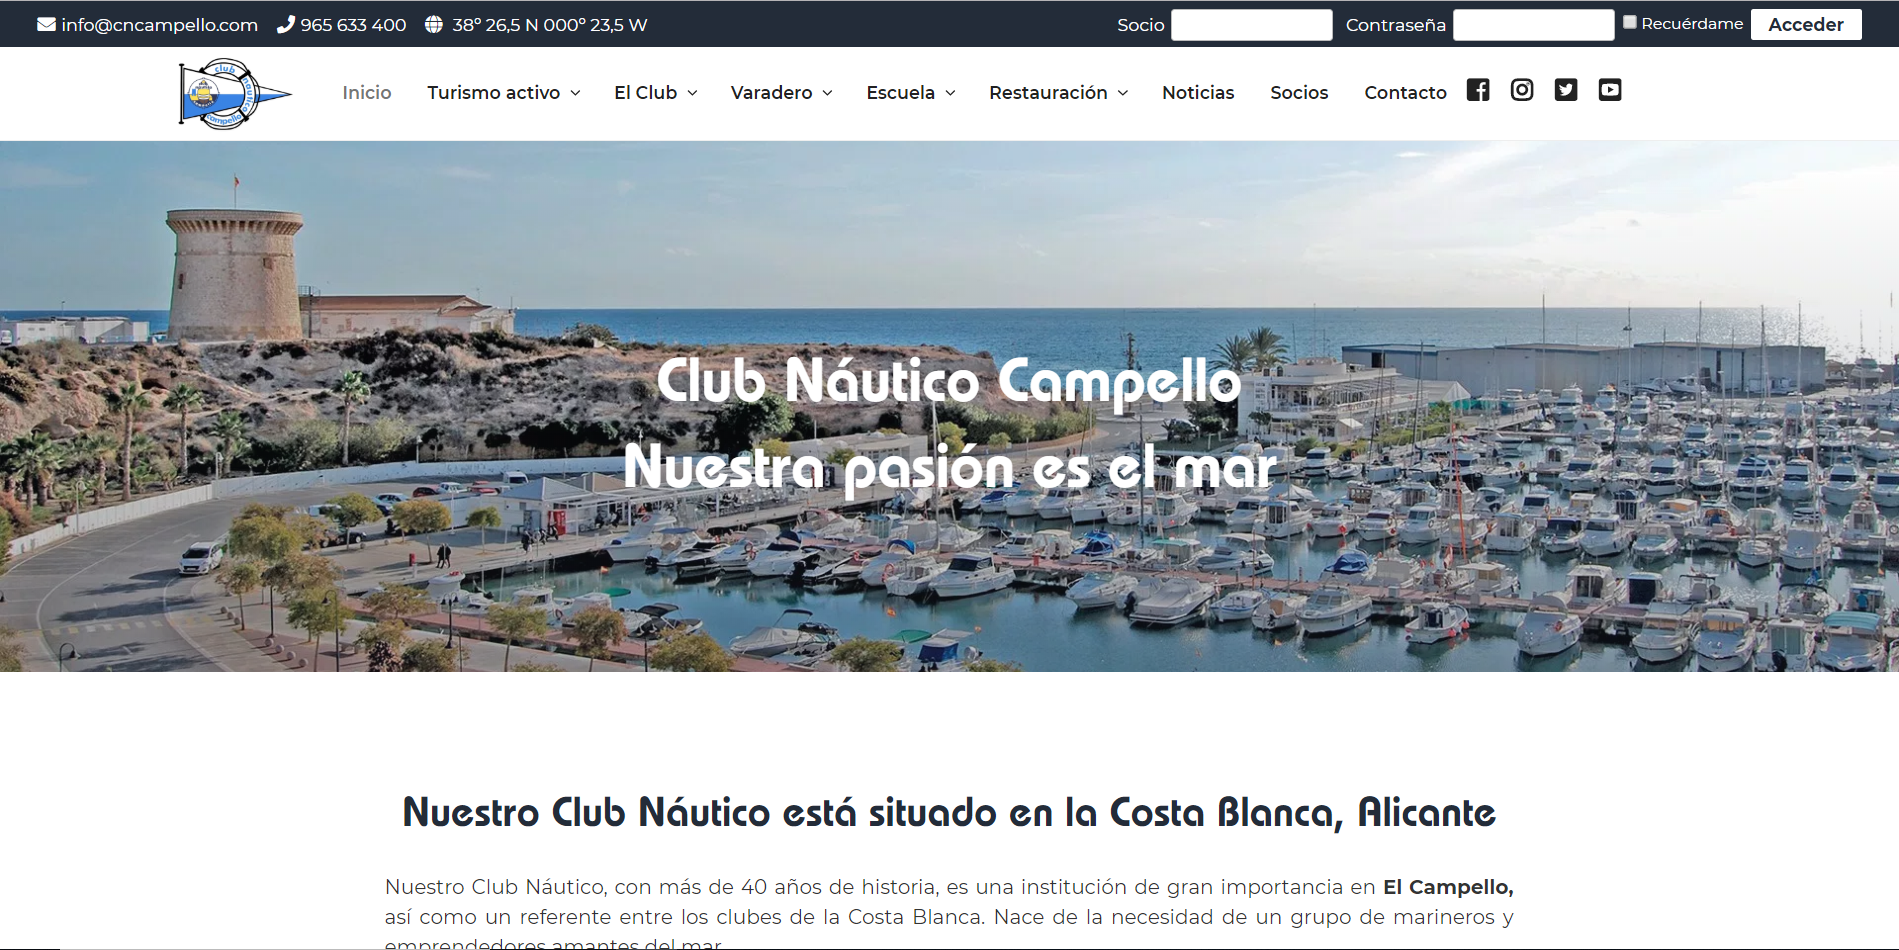 Disseny web per a Club Nàutic del Campello